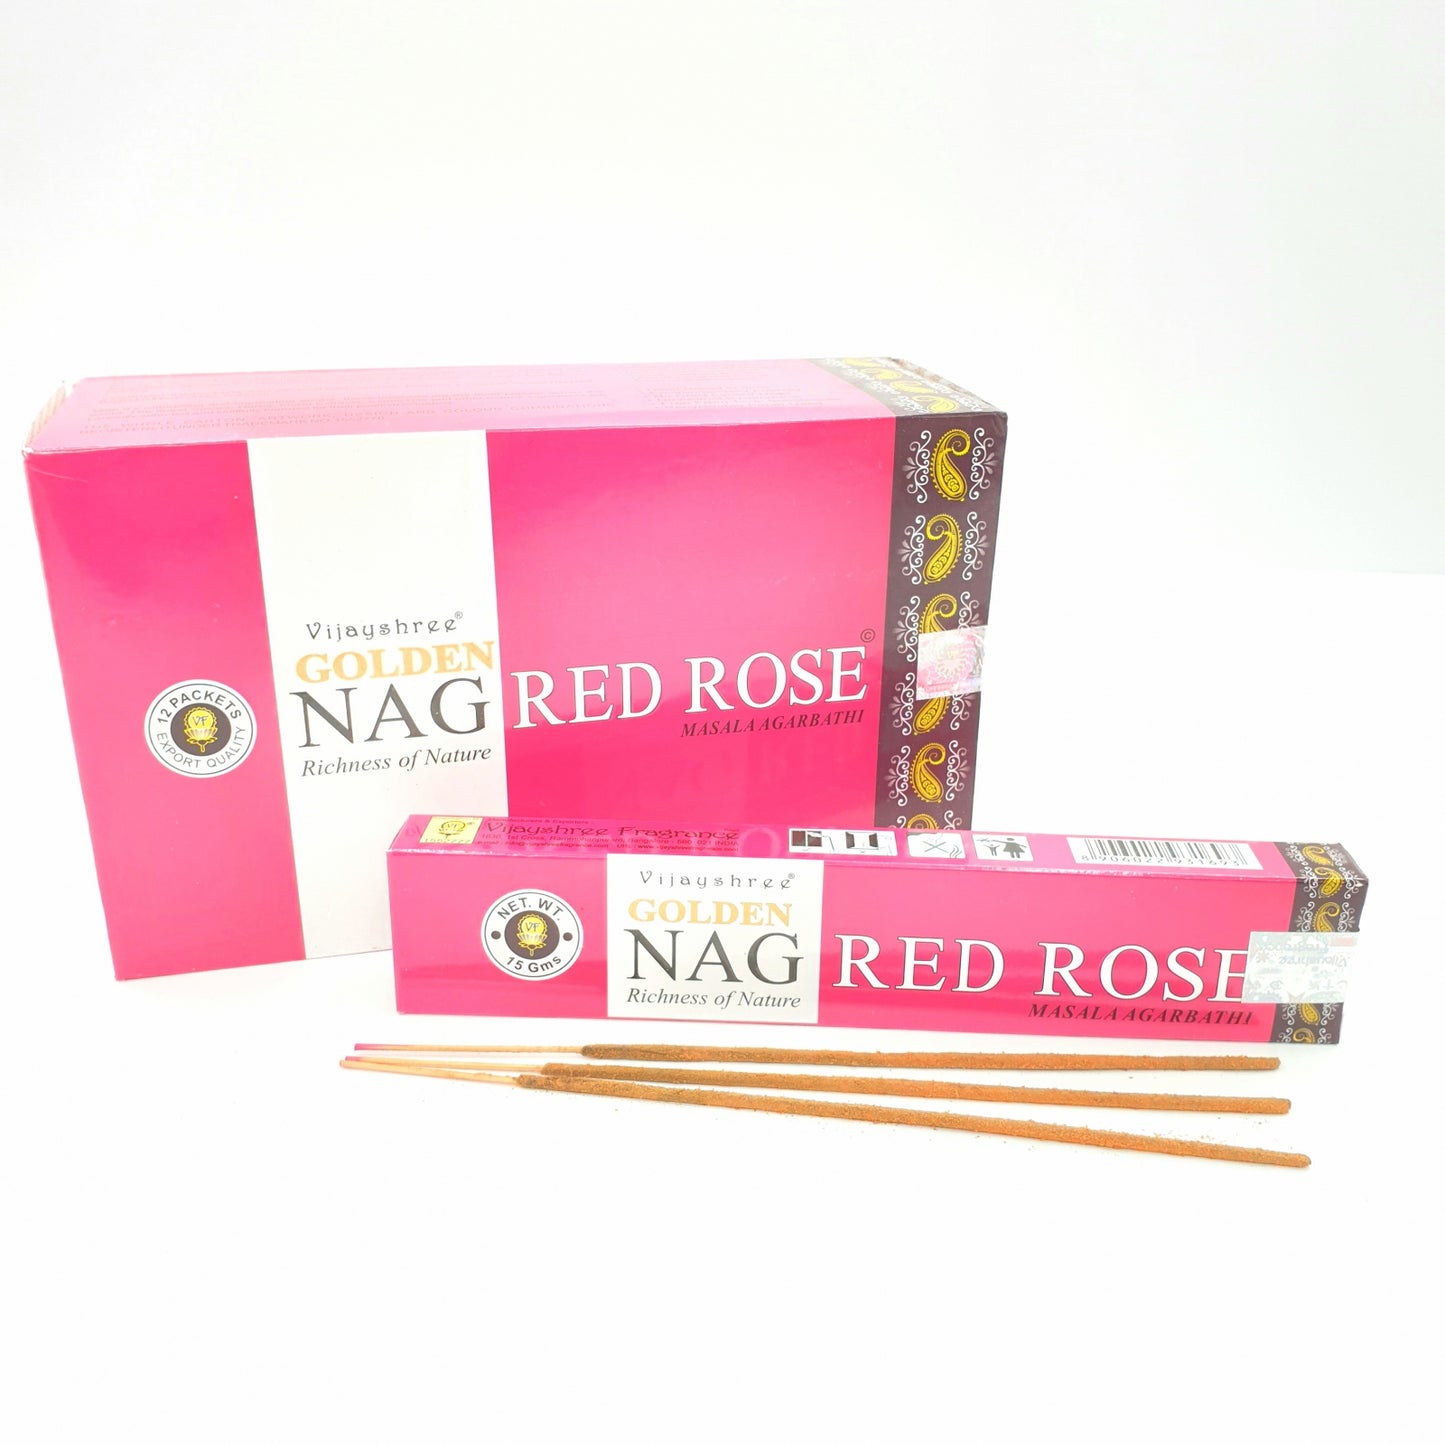 Golden Nag Red Rose - Die Romantik von handgemachtem Weihrauch